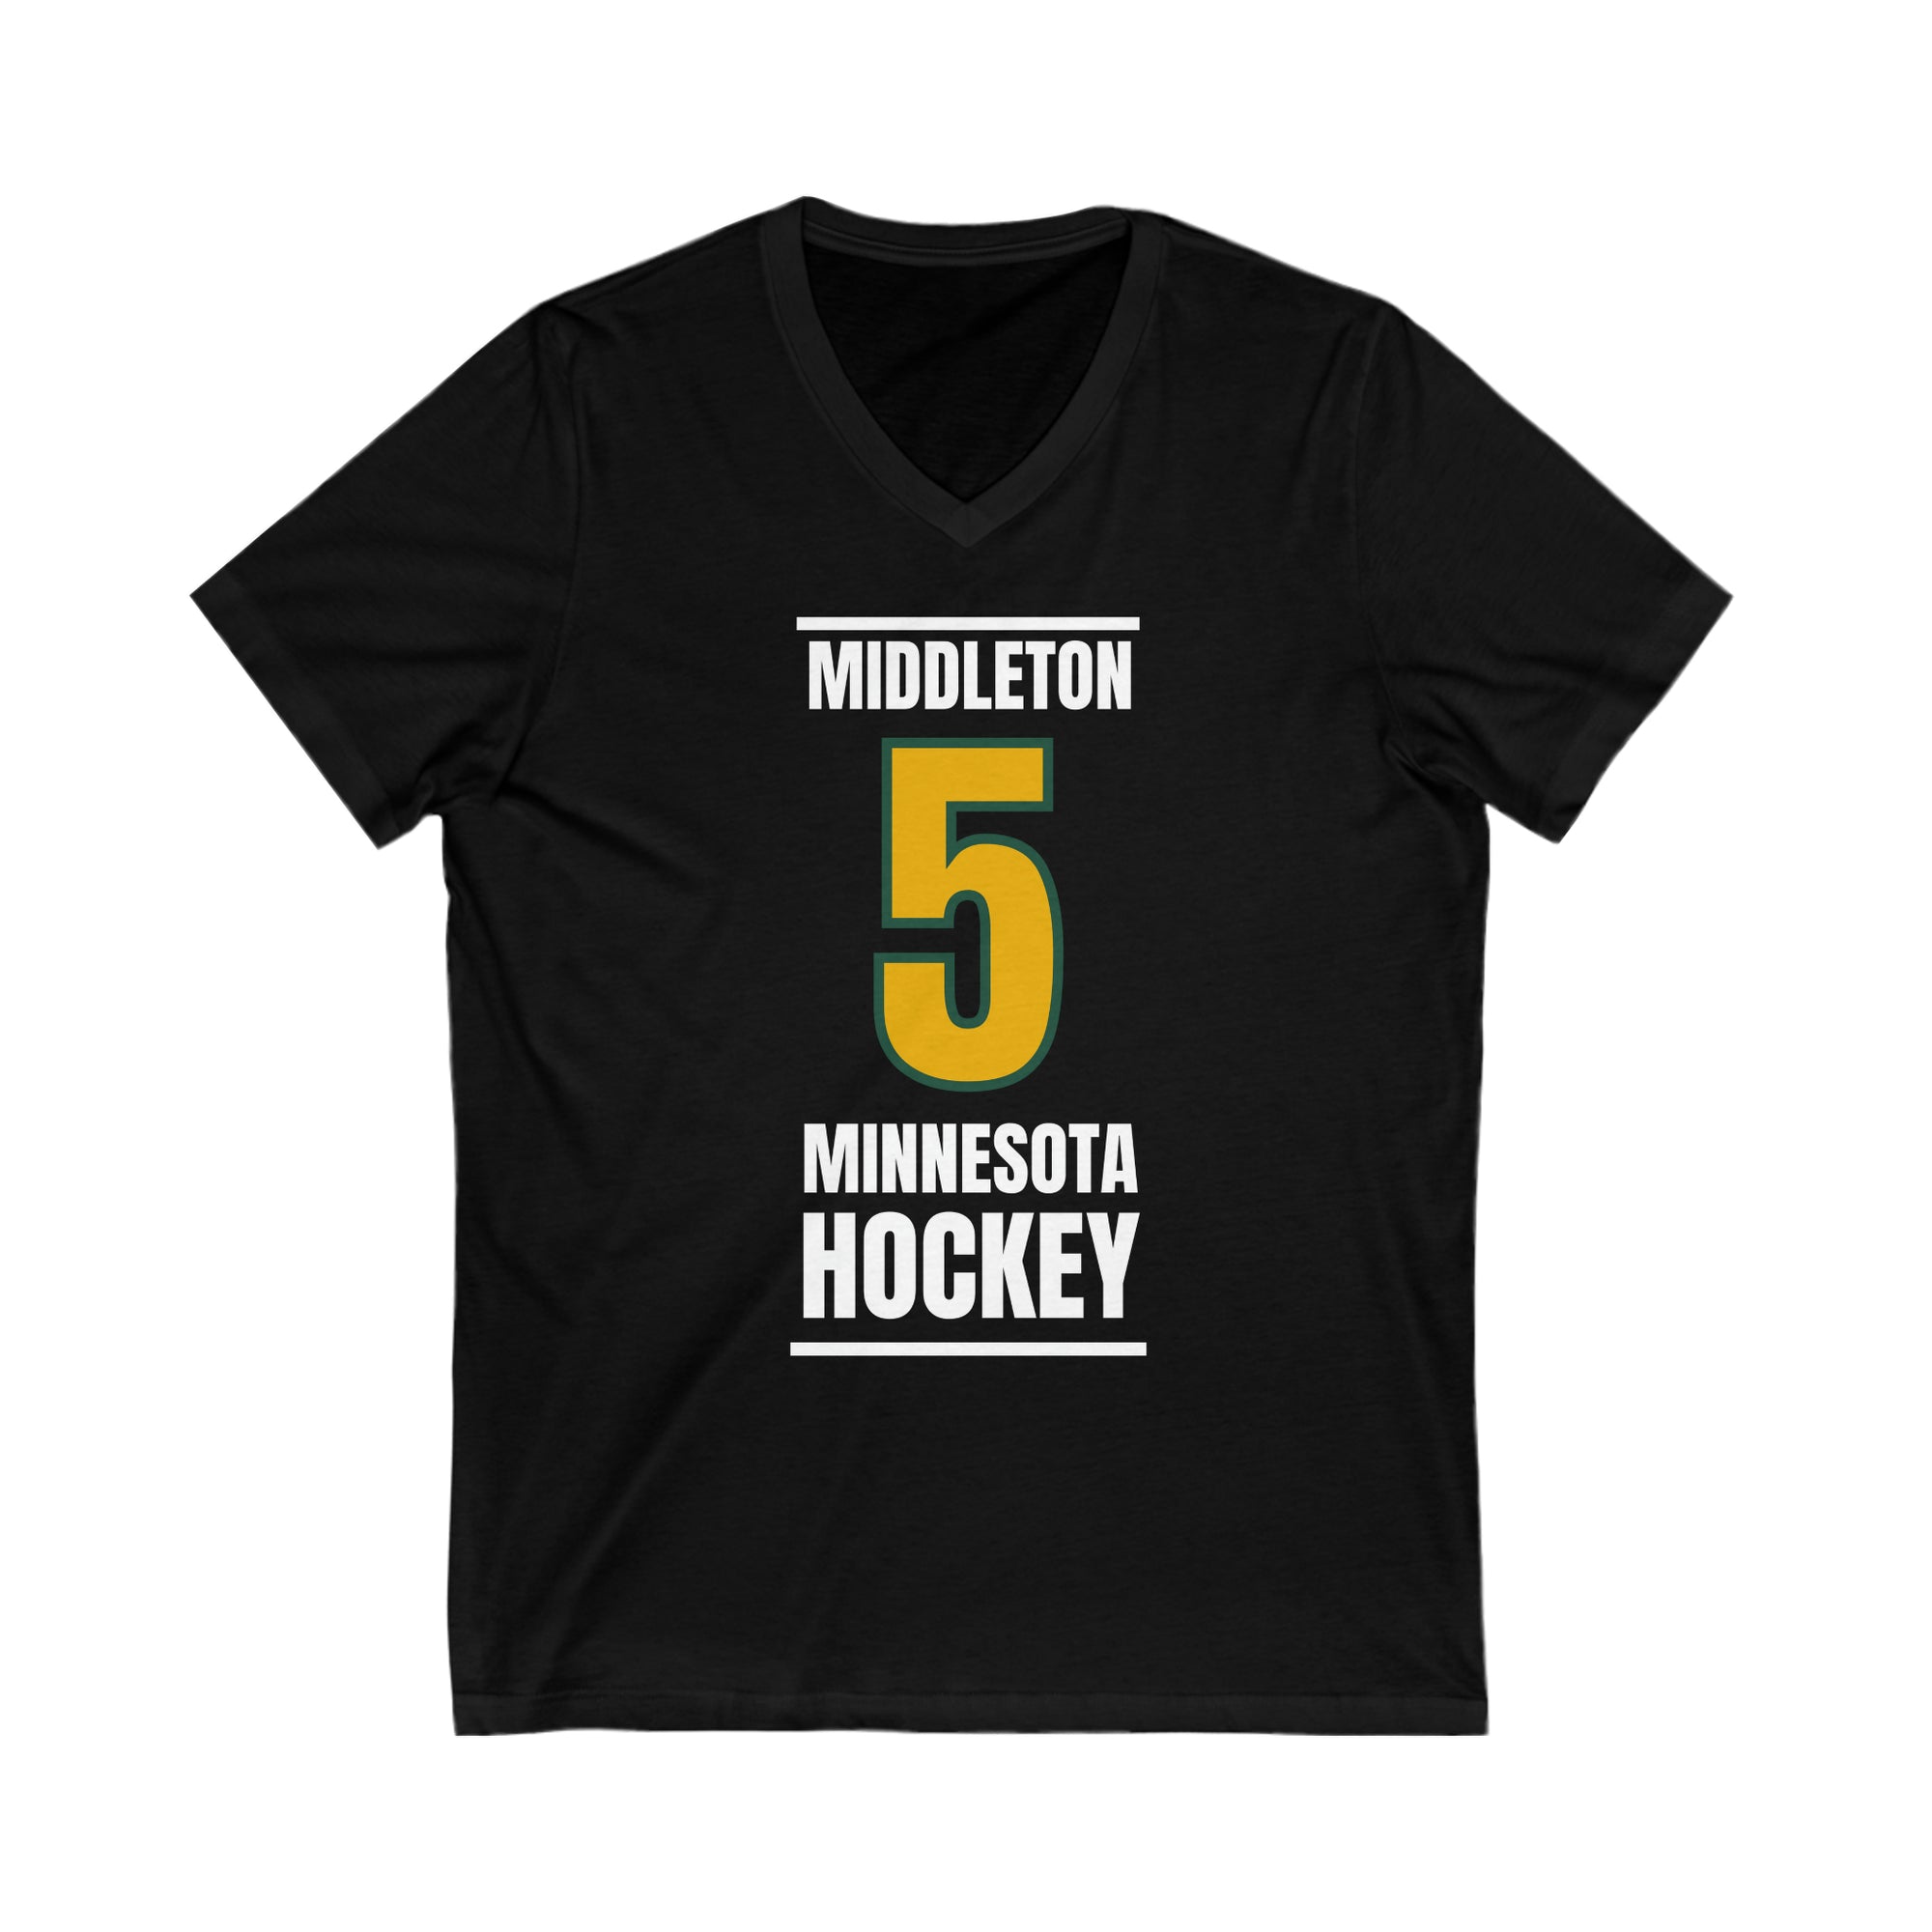 Middleton 5 Minnesota Hockey Gold Vertical Design Unisex V-Neck Tee